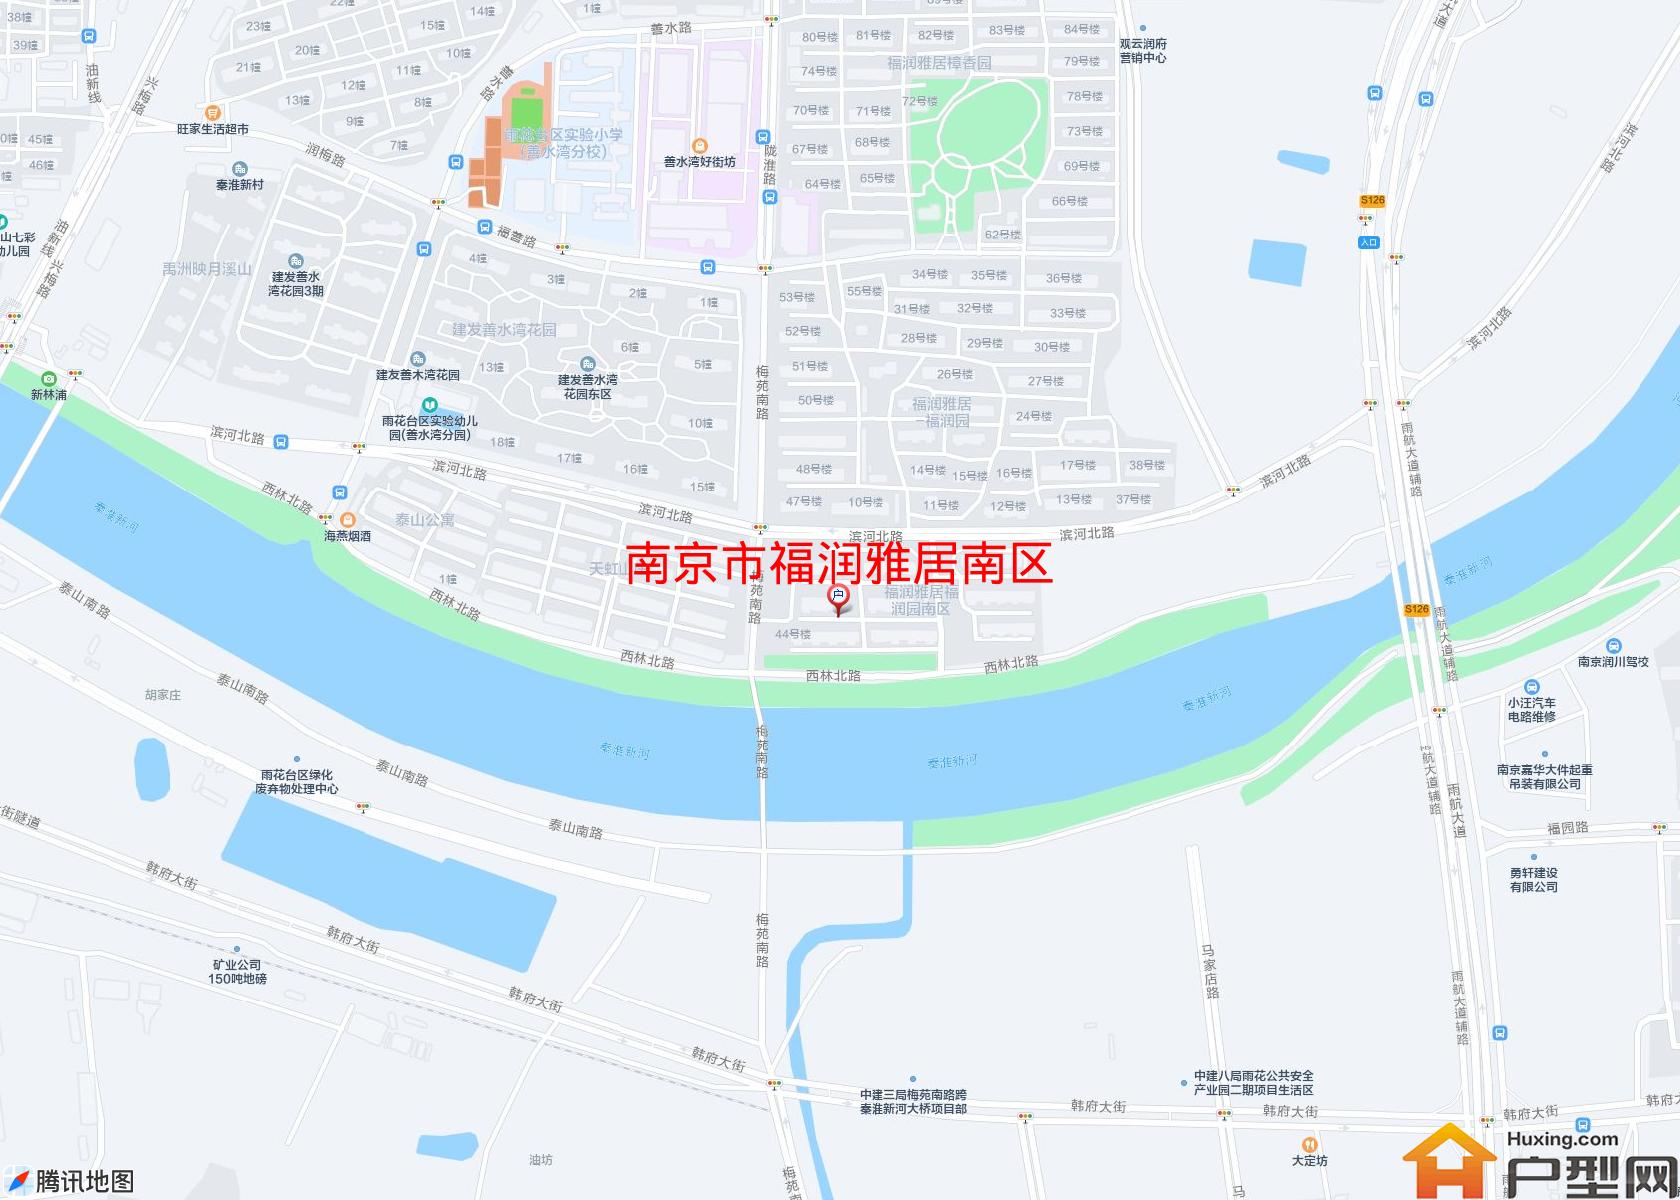 福润雅居南区小区 - 户型网